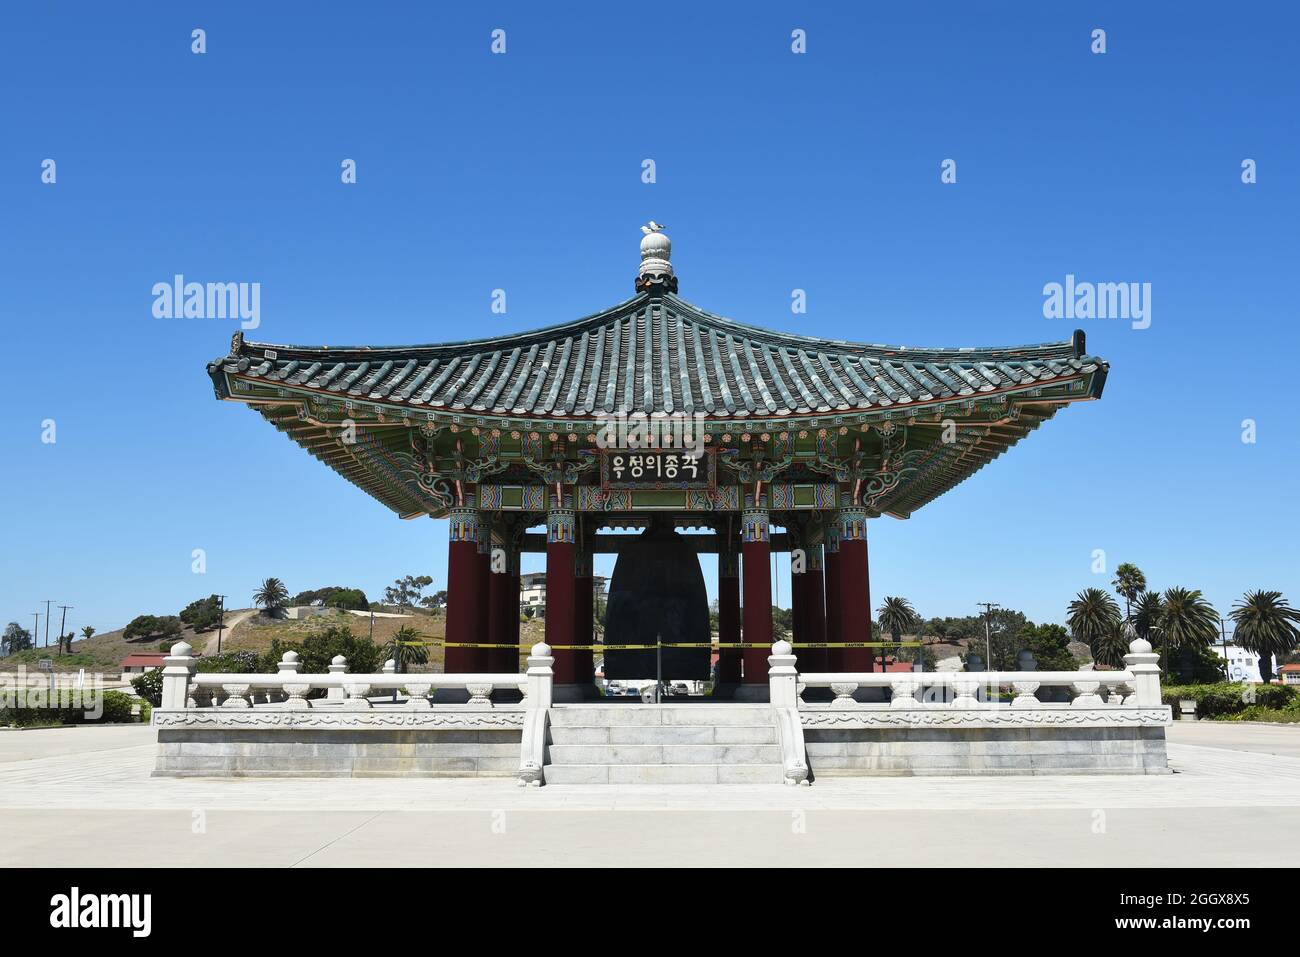 SAN PEDRO, CALIFORNIA - 27 AGO 2021: Monumento storico, la campana dell'amicizia coreana in Angels Gate Park. Foto Stock